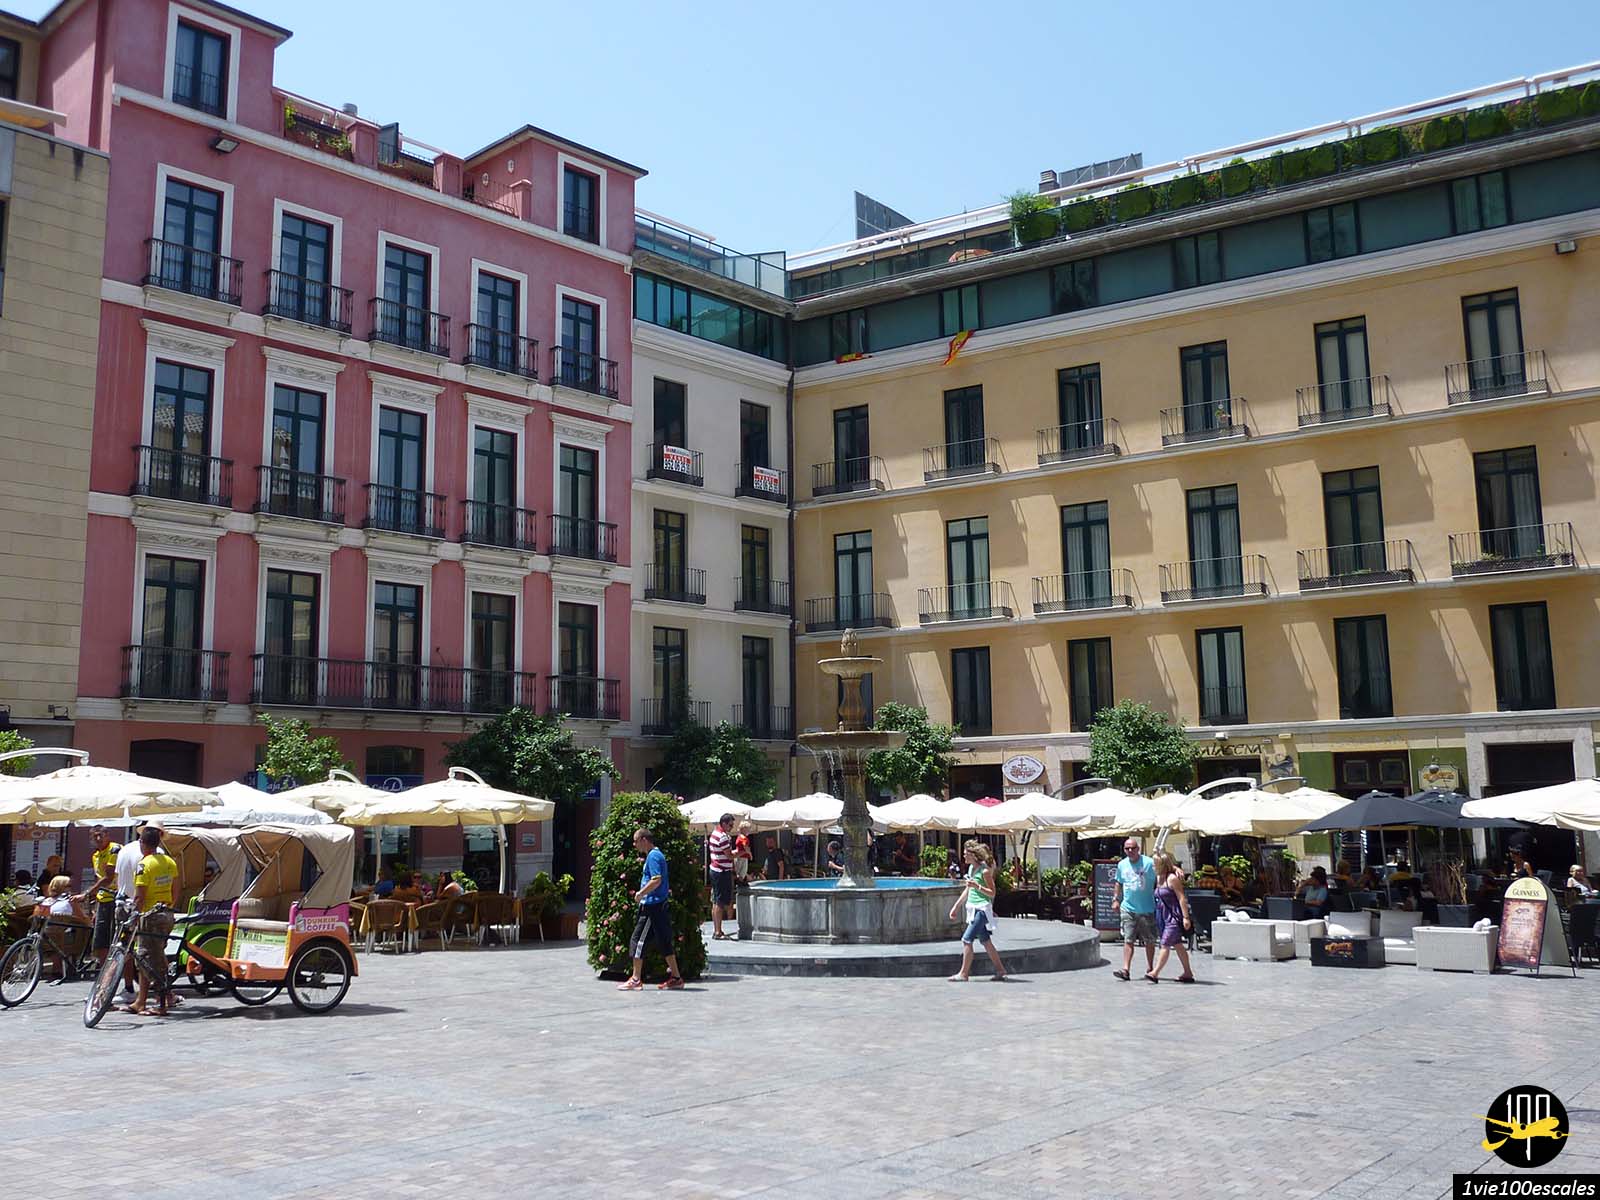 La Plaza del Obispo avec ses immeubles colorés en façe de la cathédrale de Malaga